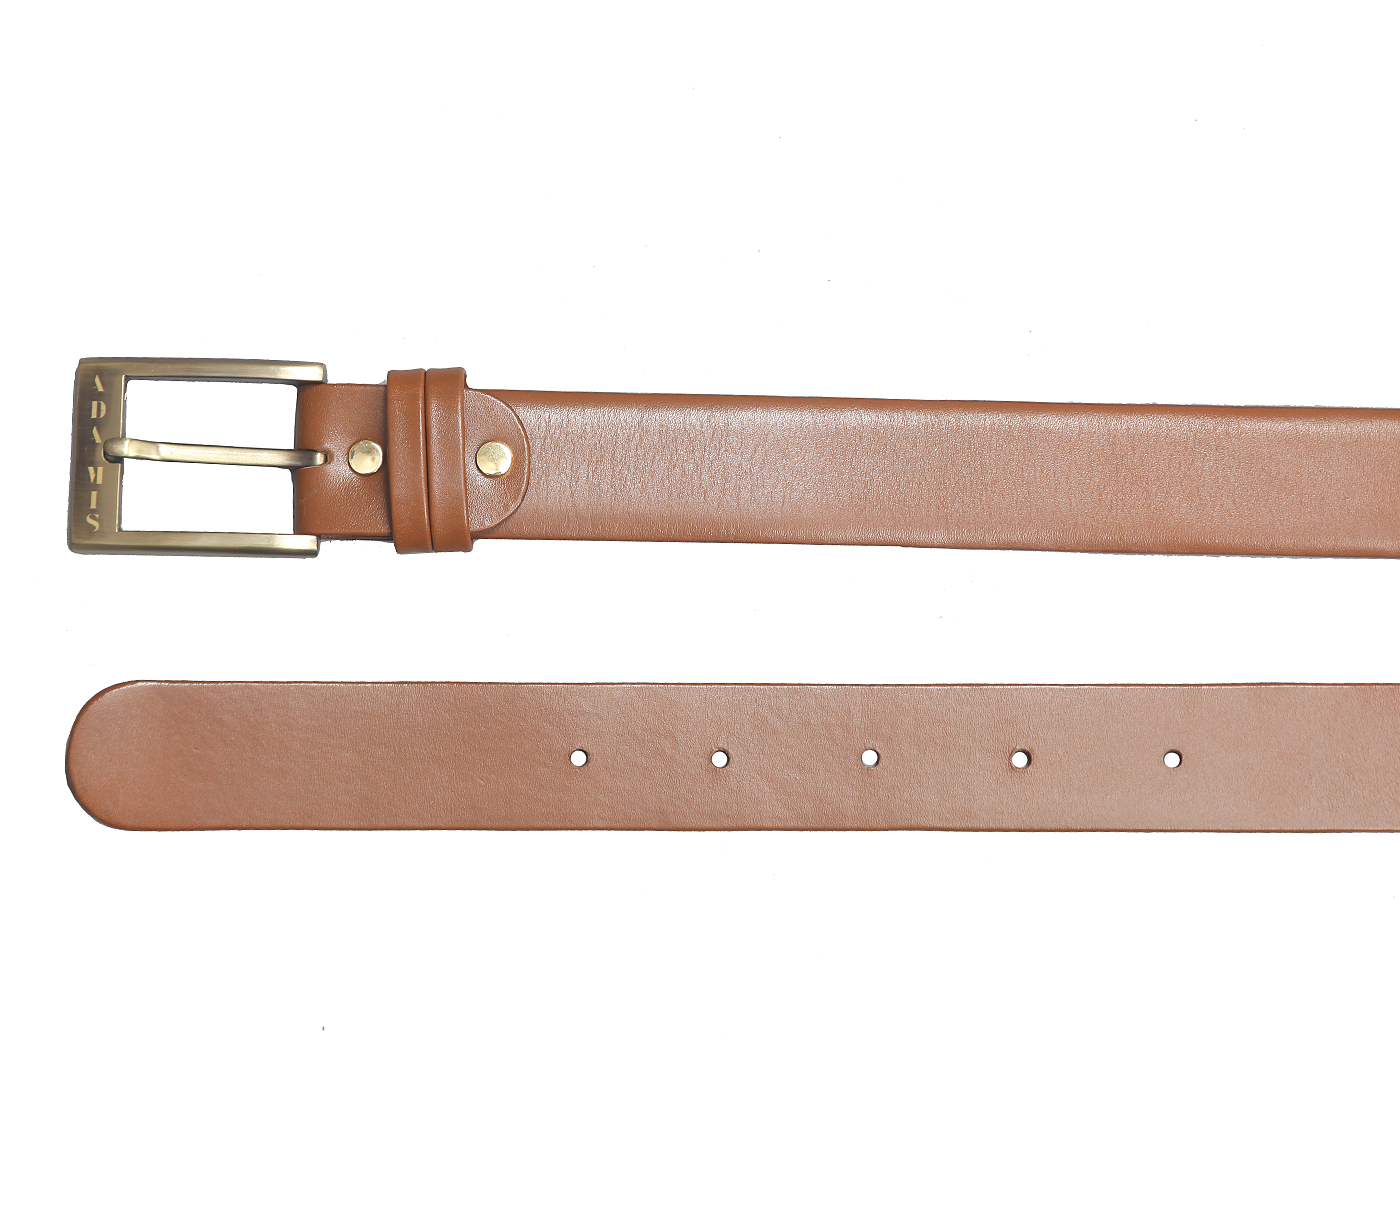 BL142--Men's Formal wear belt in Genuine Leather - Tan